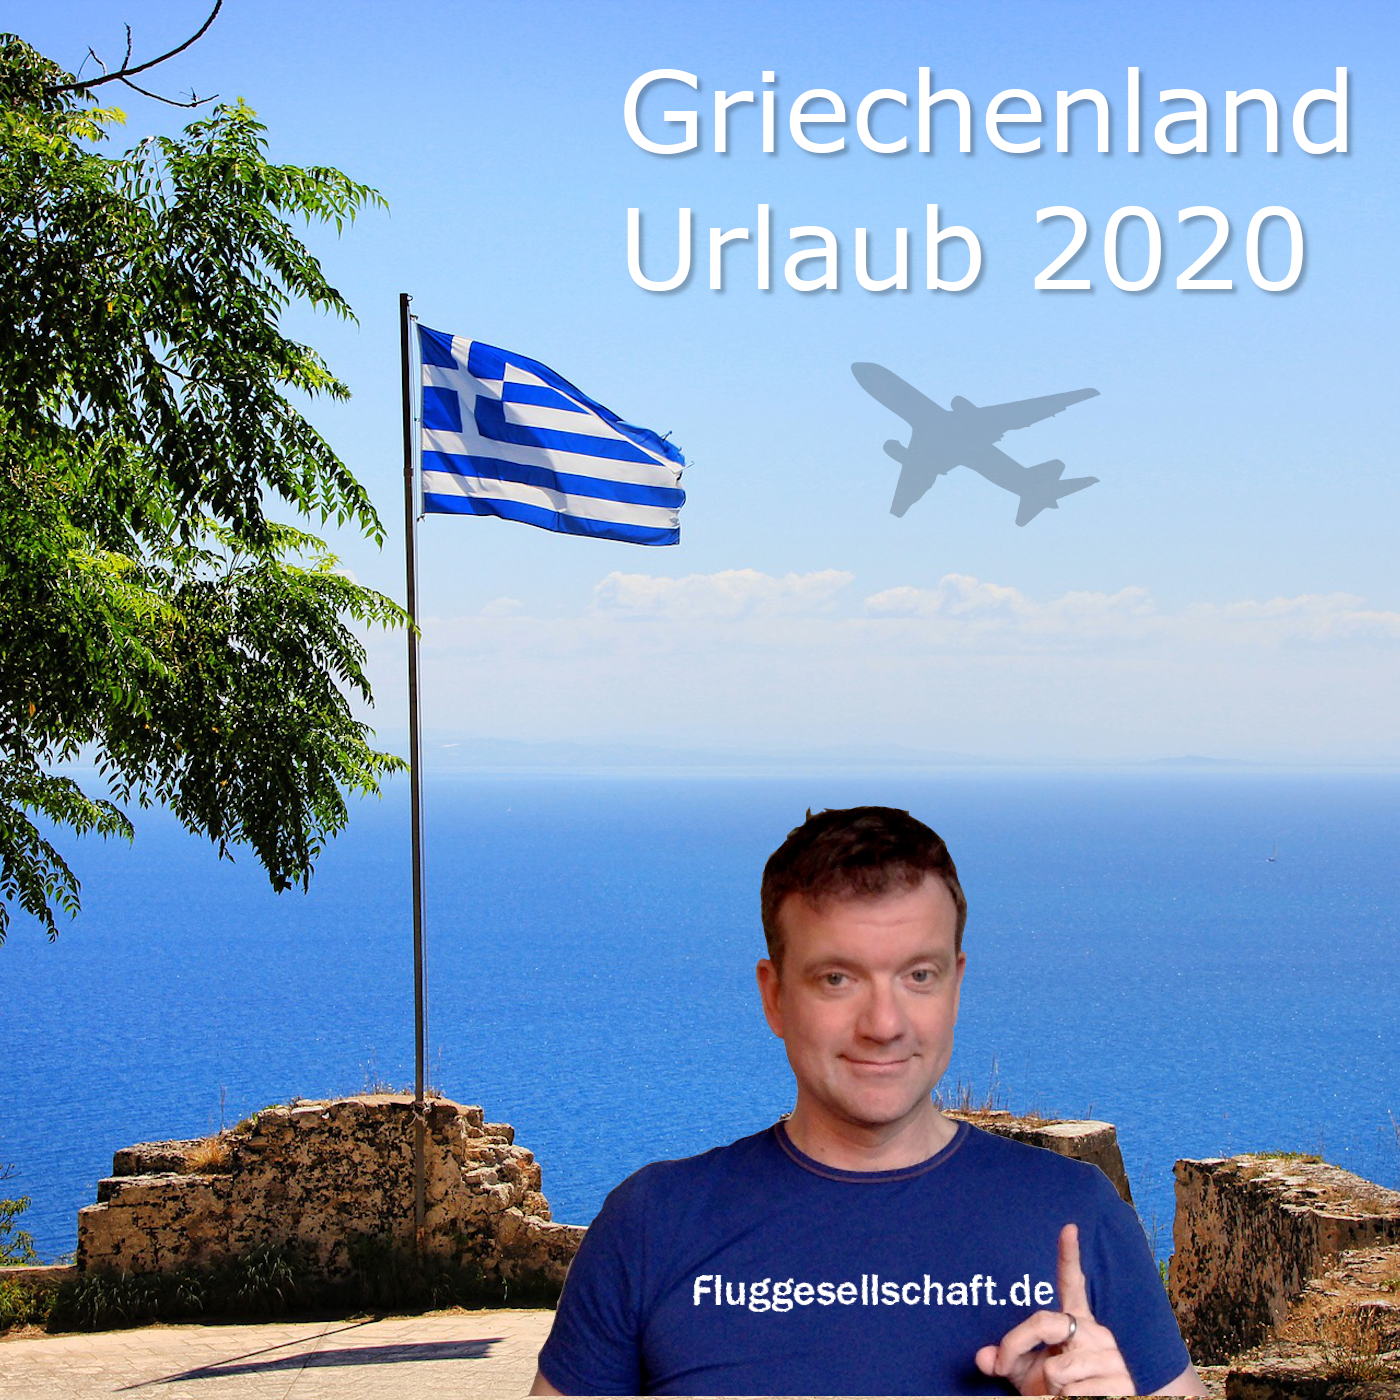 Griechenland Urlaub 2020 - nach der Coronakrise Teil 1/3